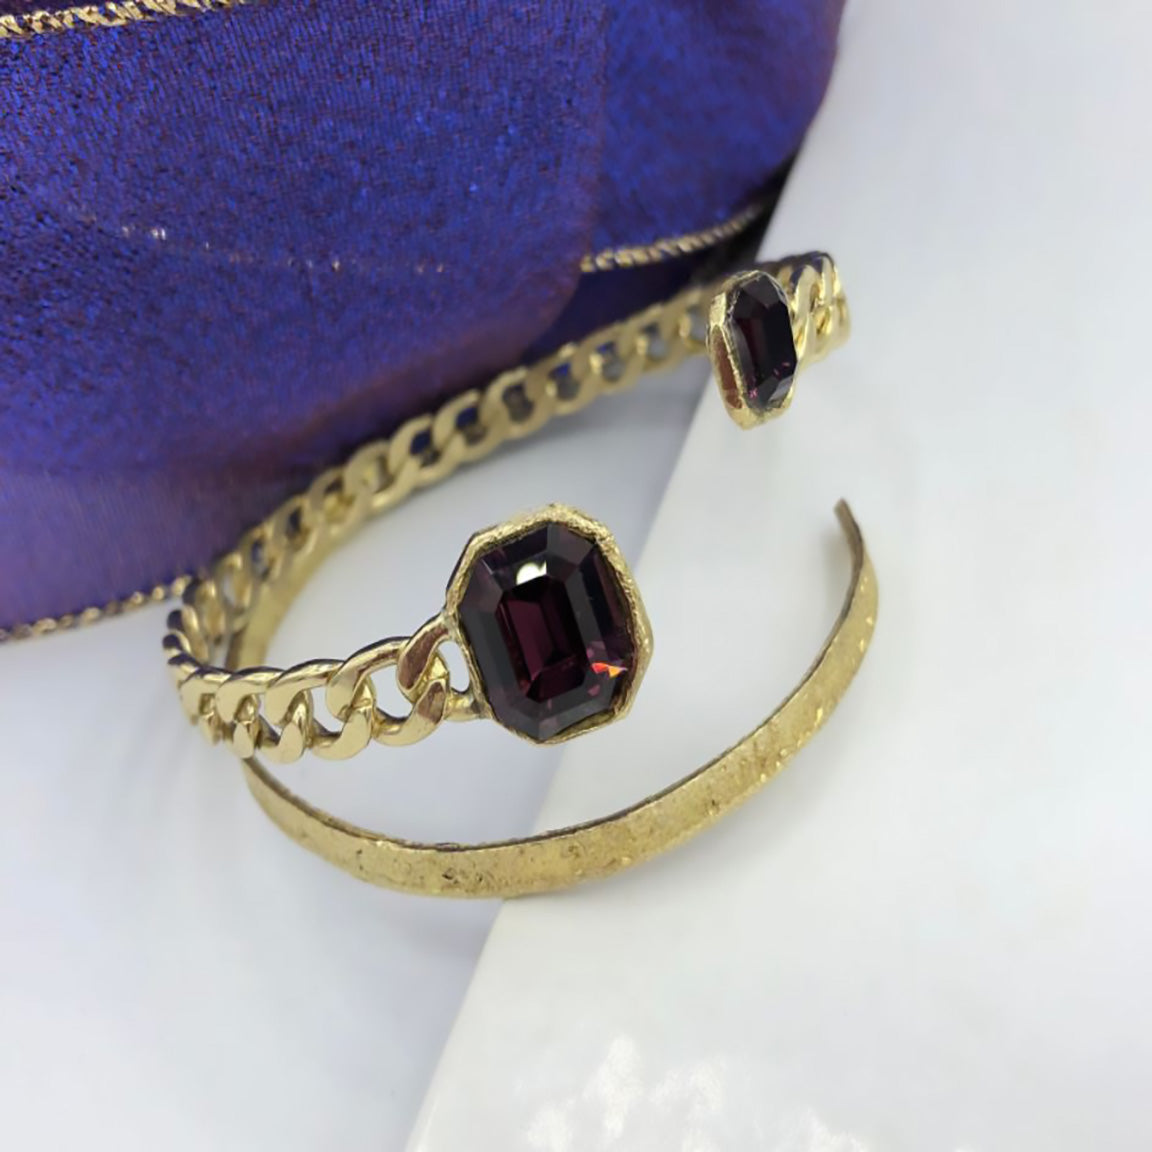 Kalliope Crystal Chain Cuff Bracelet For Women / Brass, Swarovski Crystals / Dark Purple / Kahlua